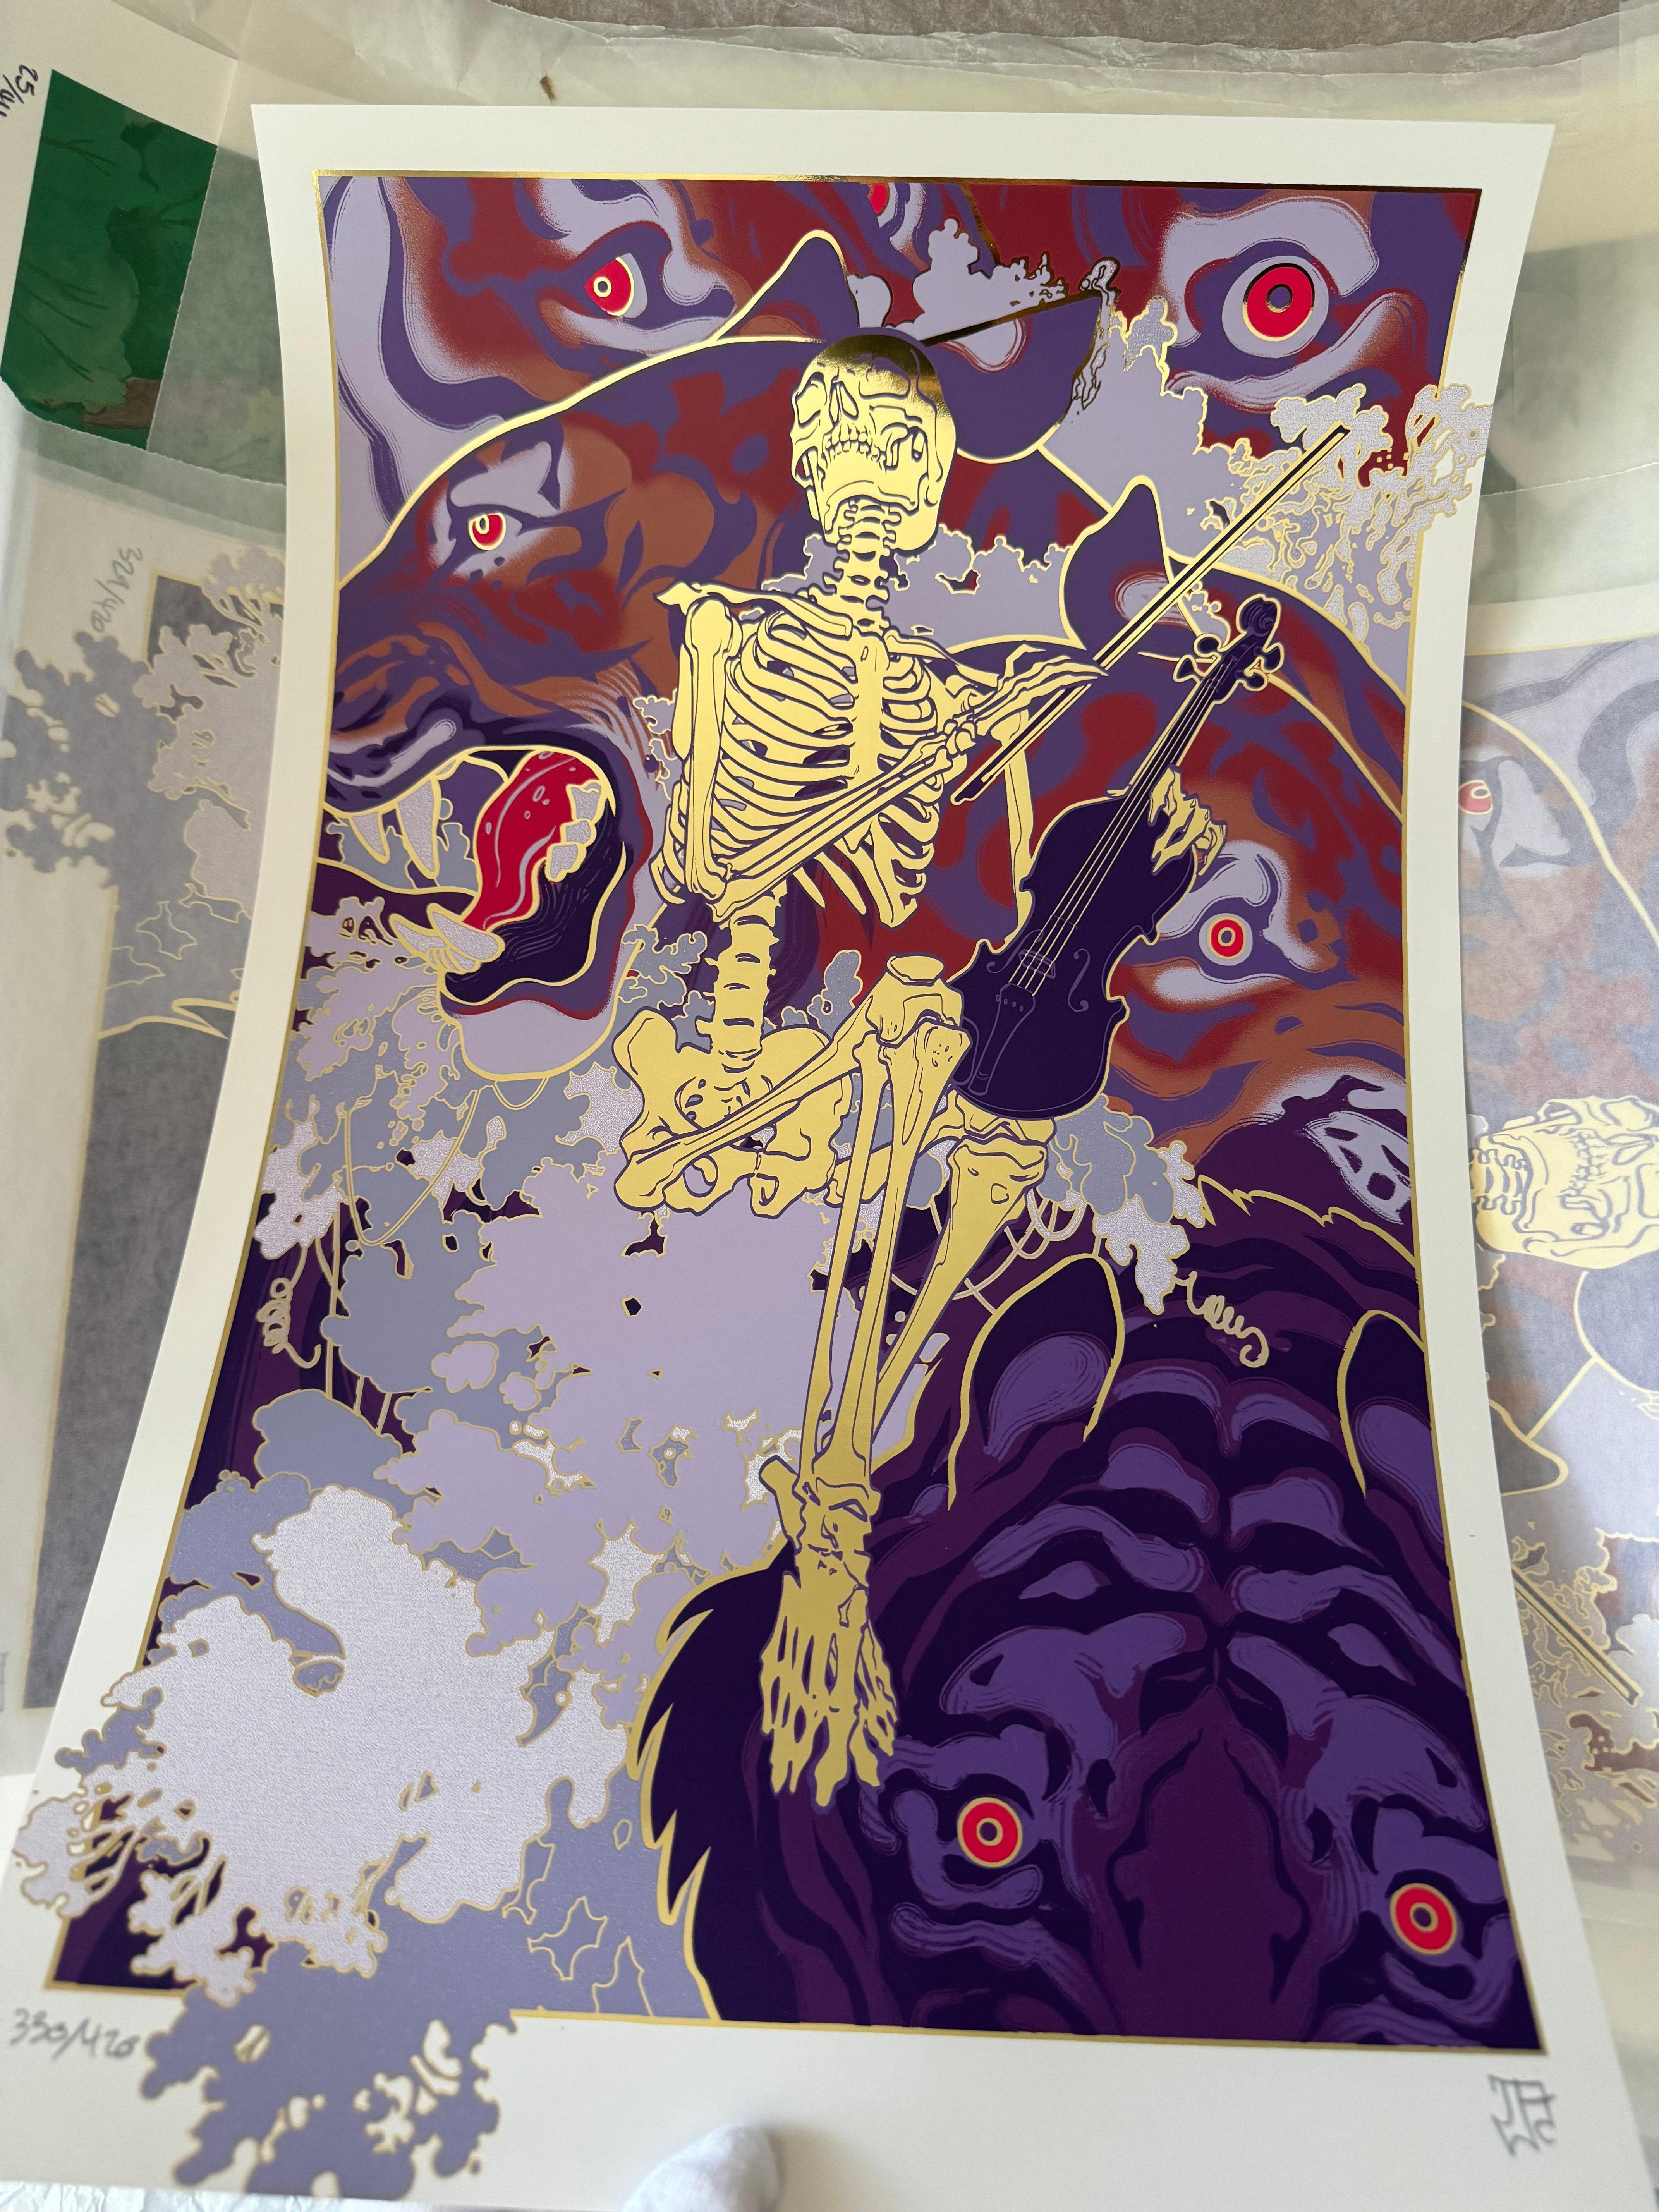 Abstract Print Jaw cooper - Impression sérigraphiée Soothe 9 couleurs sur papier feuille d'or illustration squelette de tigre